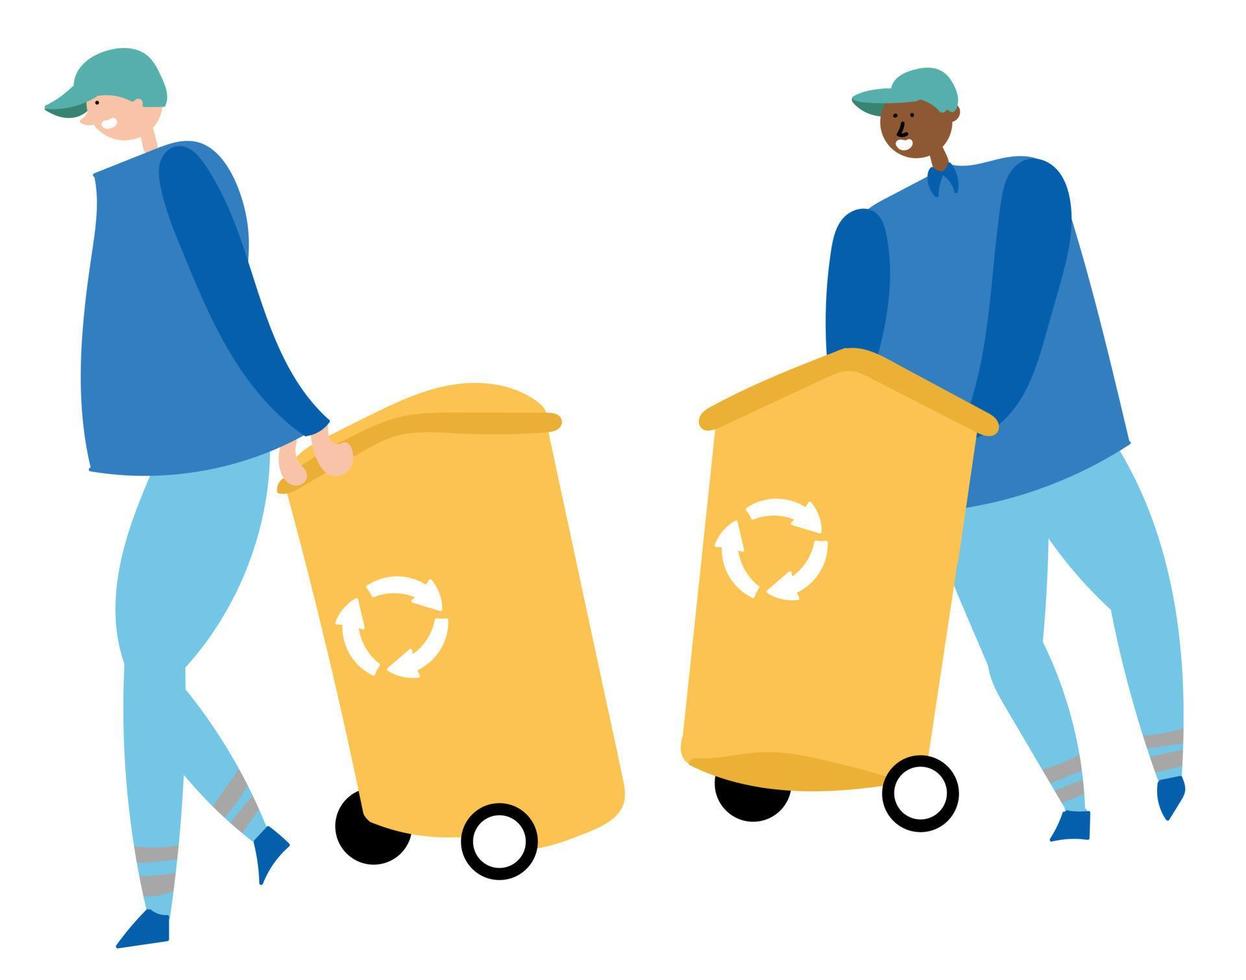 arbeiter sammeln müll und tragen container zum recycling. Abfallreduzierung vektor